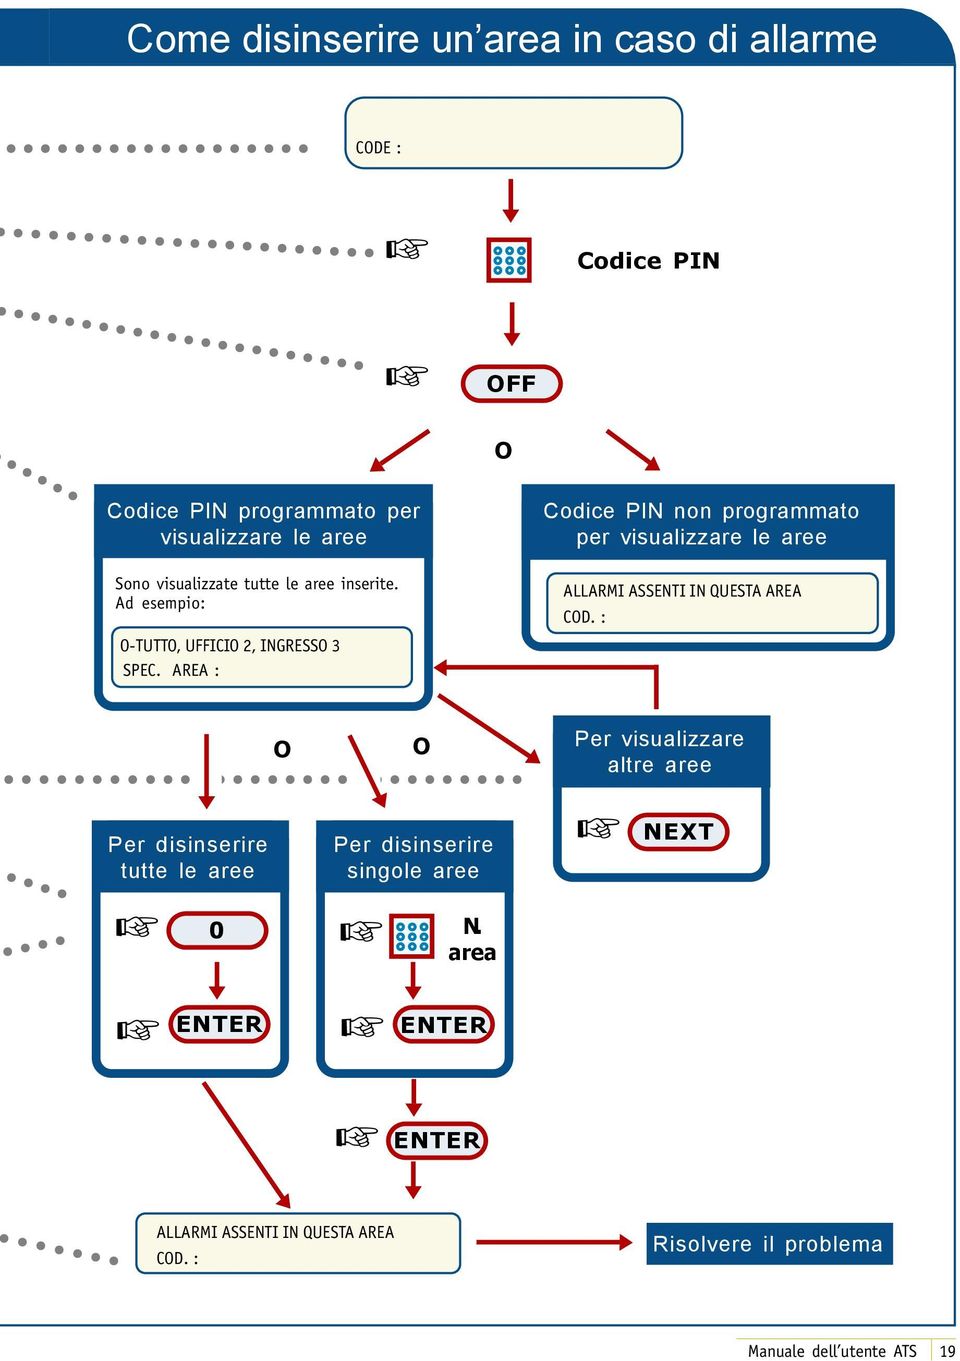 AREA : Codice PIN non programmato per visualizzare le aree CD.